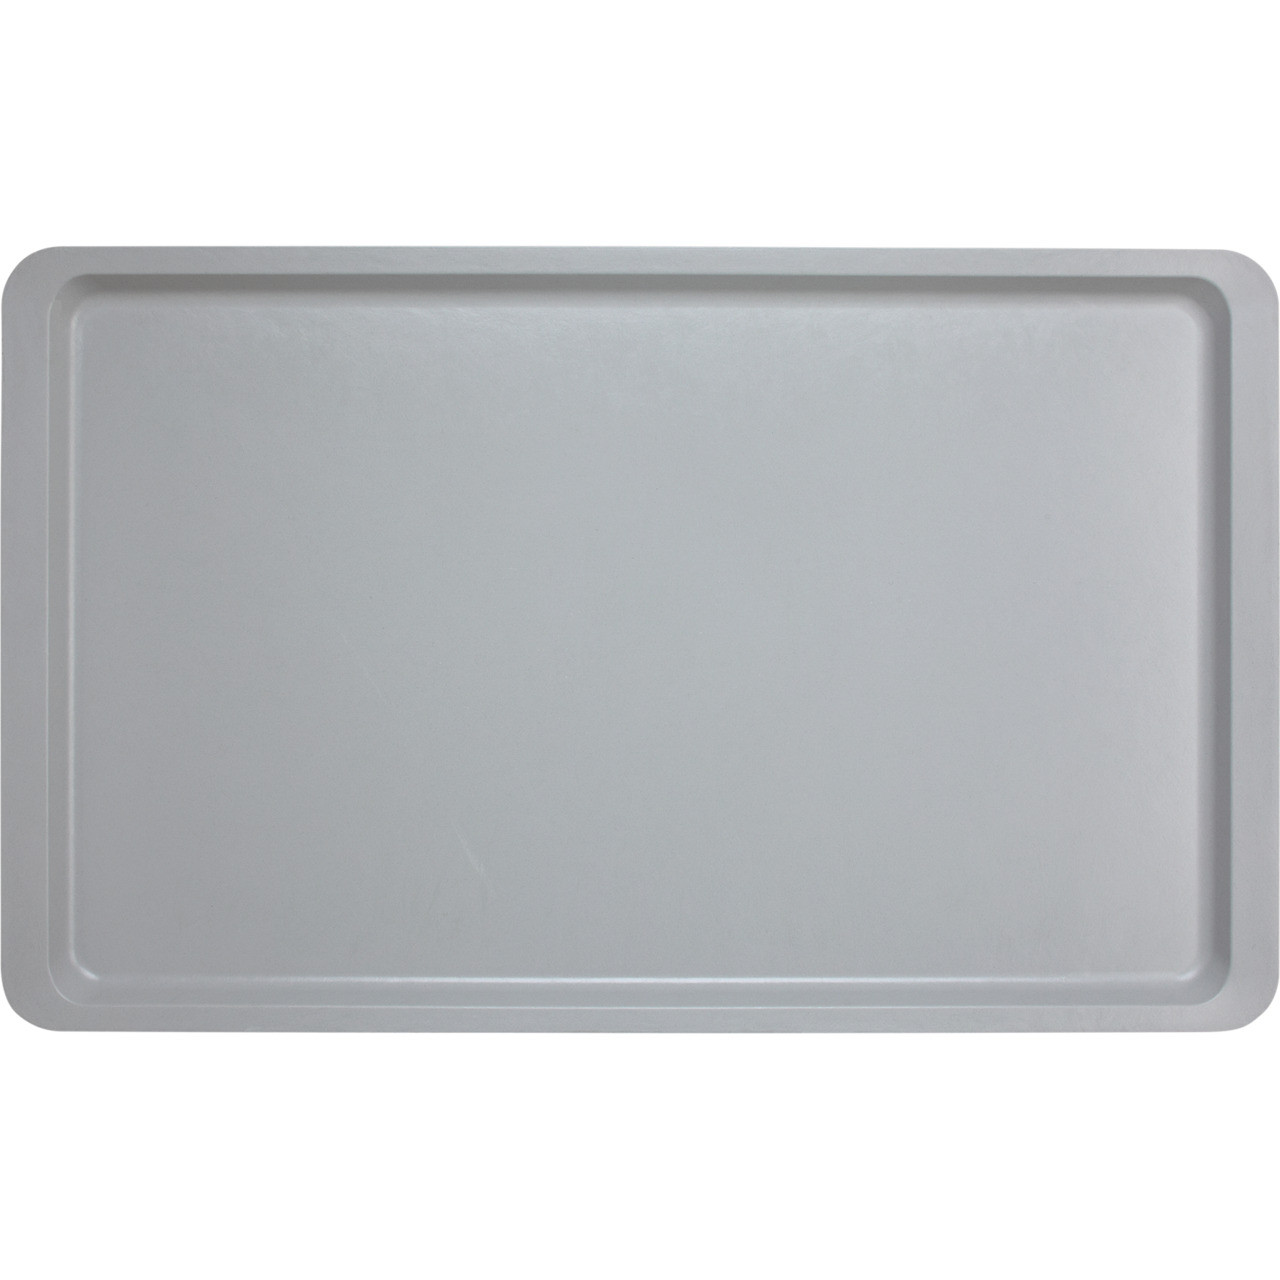 Tablett Polyester Lite glatt EN 1/1 530 x 370 mm lichtgrau